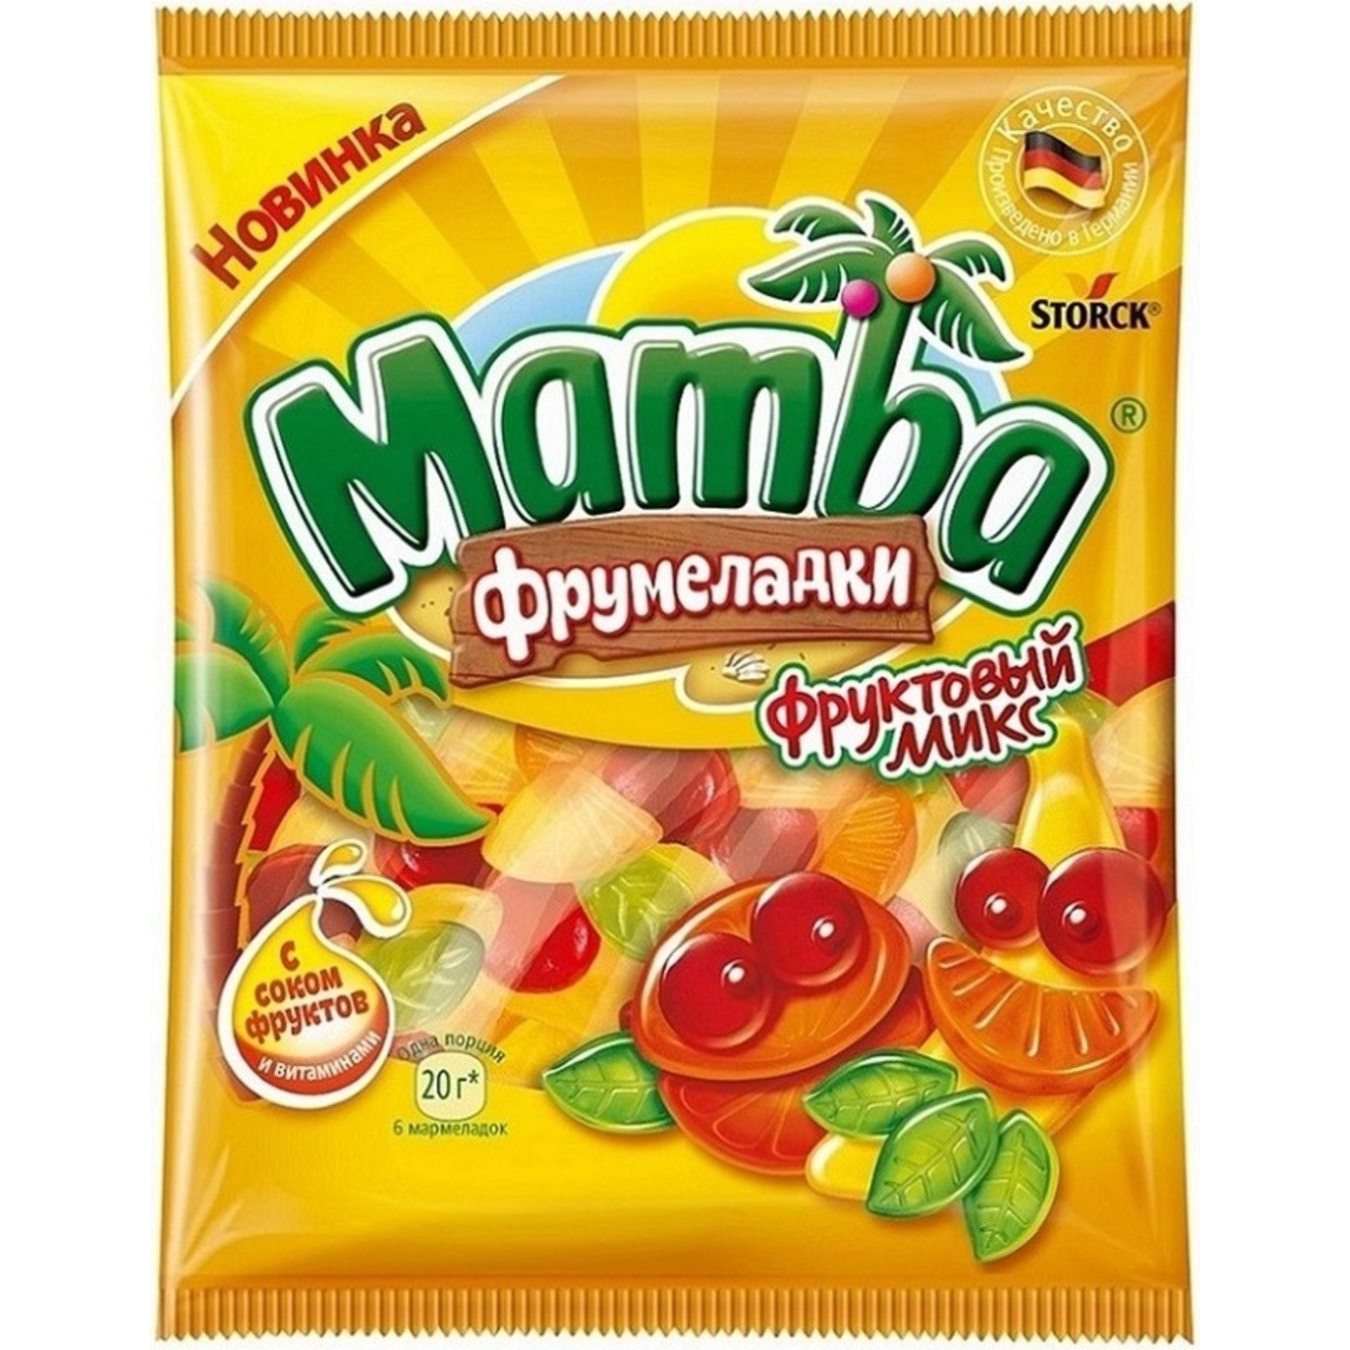 Mamba fruit jellies candy 72g